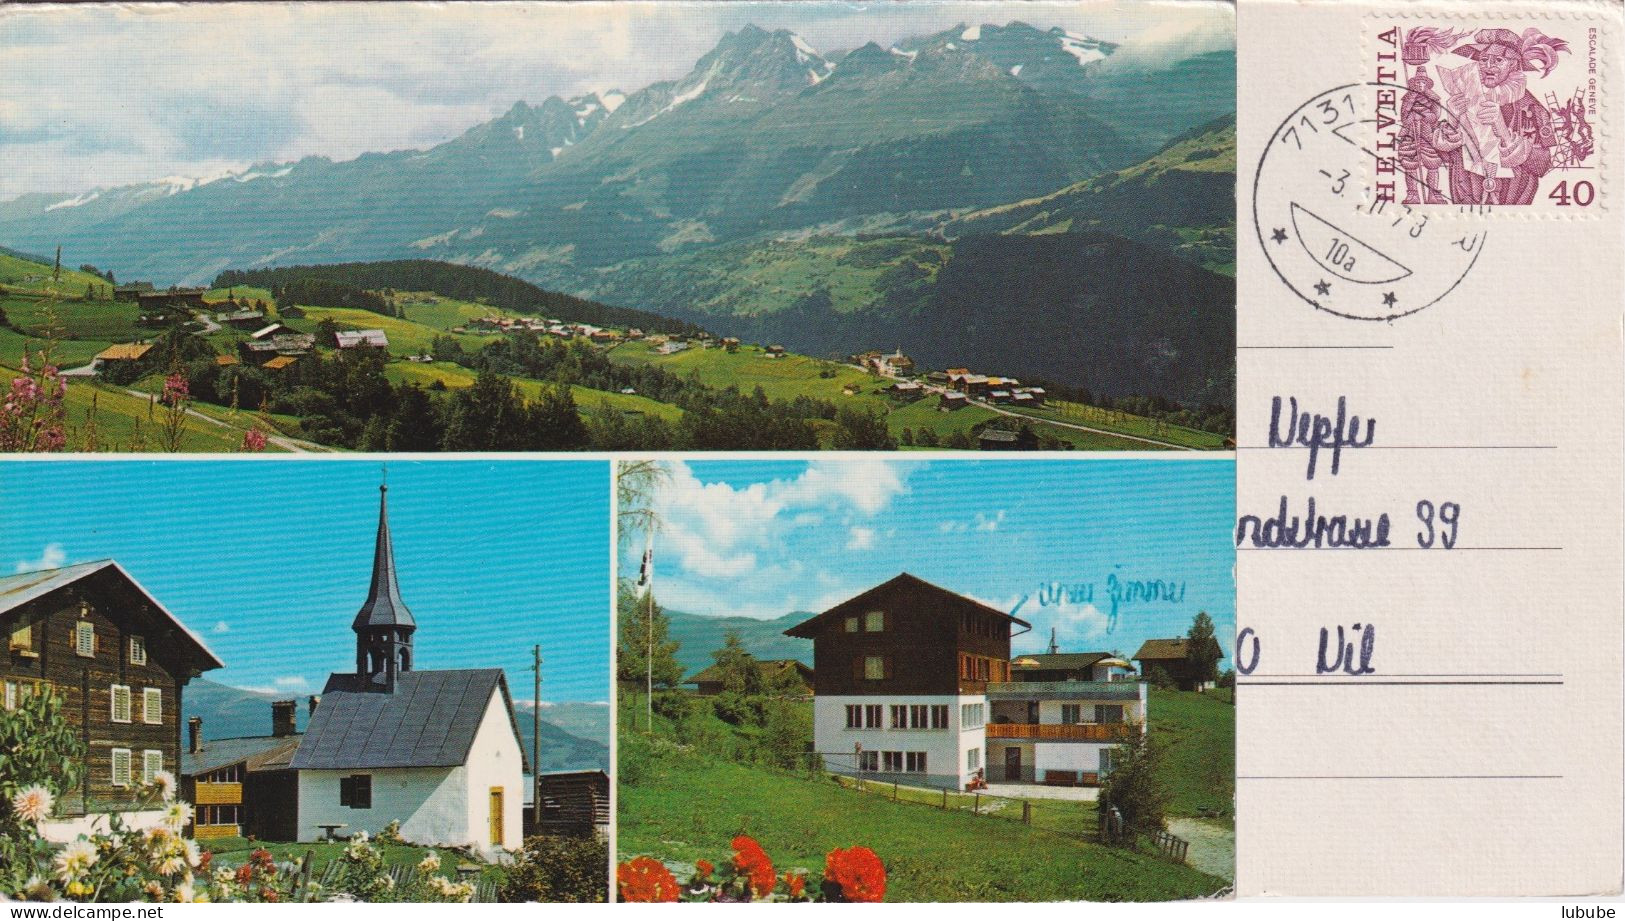 Affeier - Ferienheim Quardra  (4 Bilder)         1978 - Obersaxen